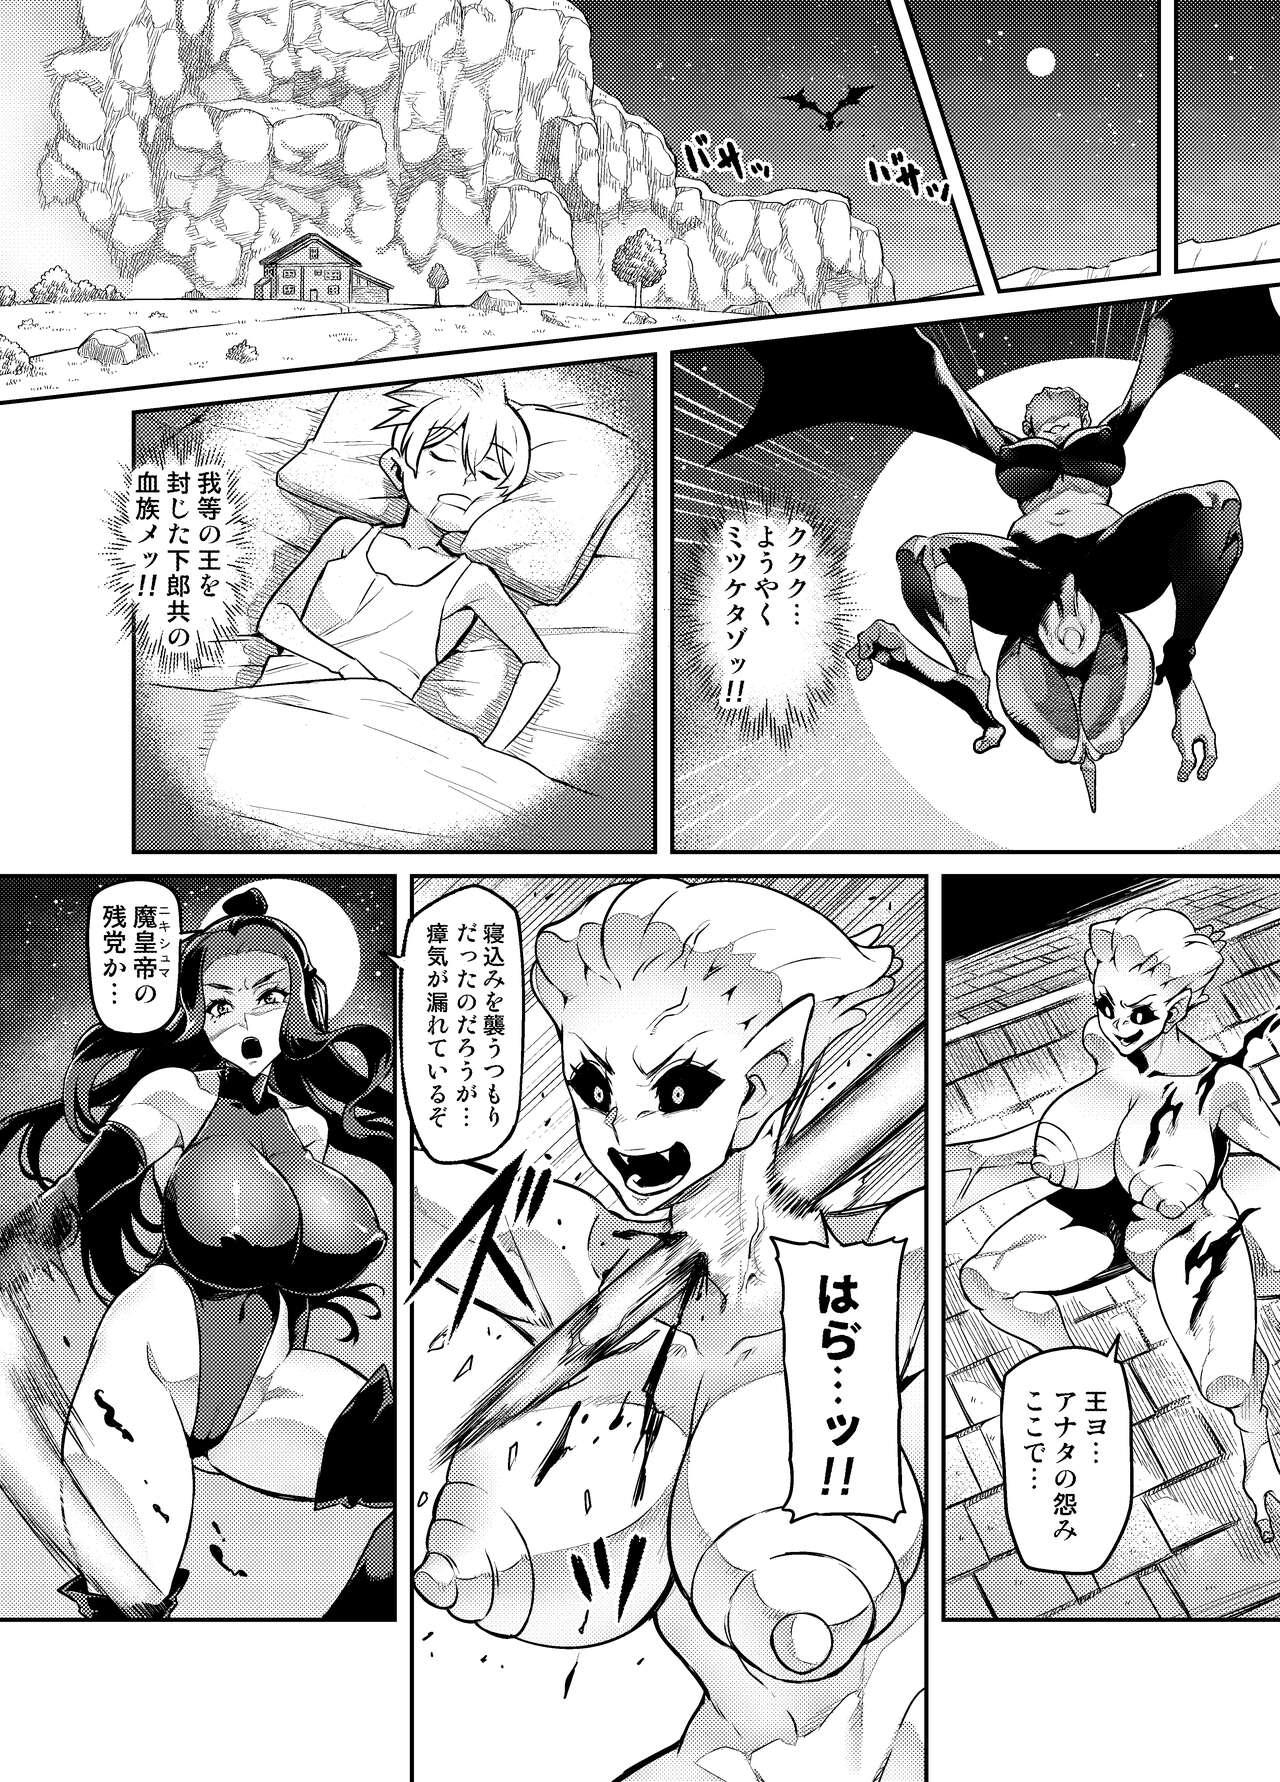 Chat [Hatoba Akane] Maken no Elena ~Katte no Omoibito ni Takusareta Ko to no Koi ni Ochiru Majo~ Ch. 1-13 [Ongoing] - Original Domination - Page 6